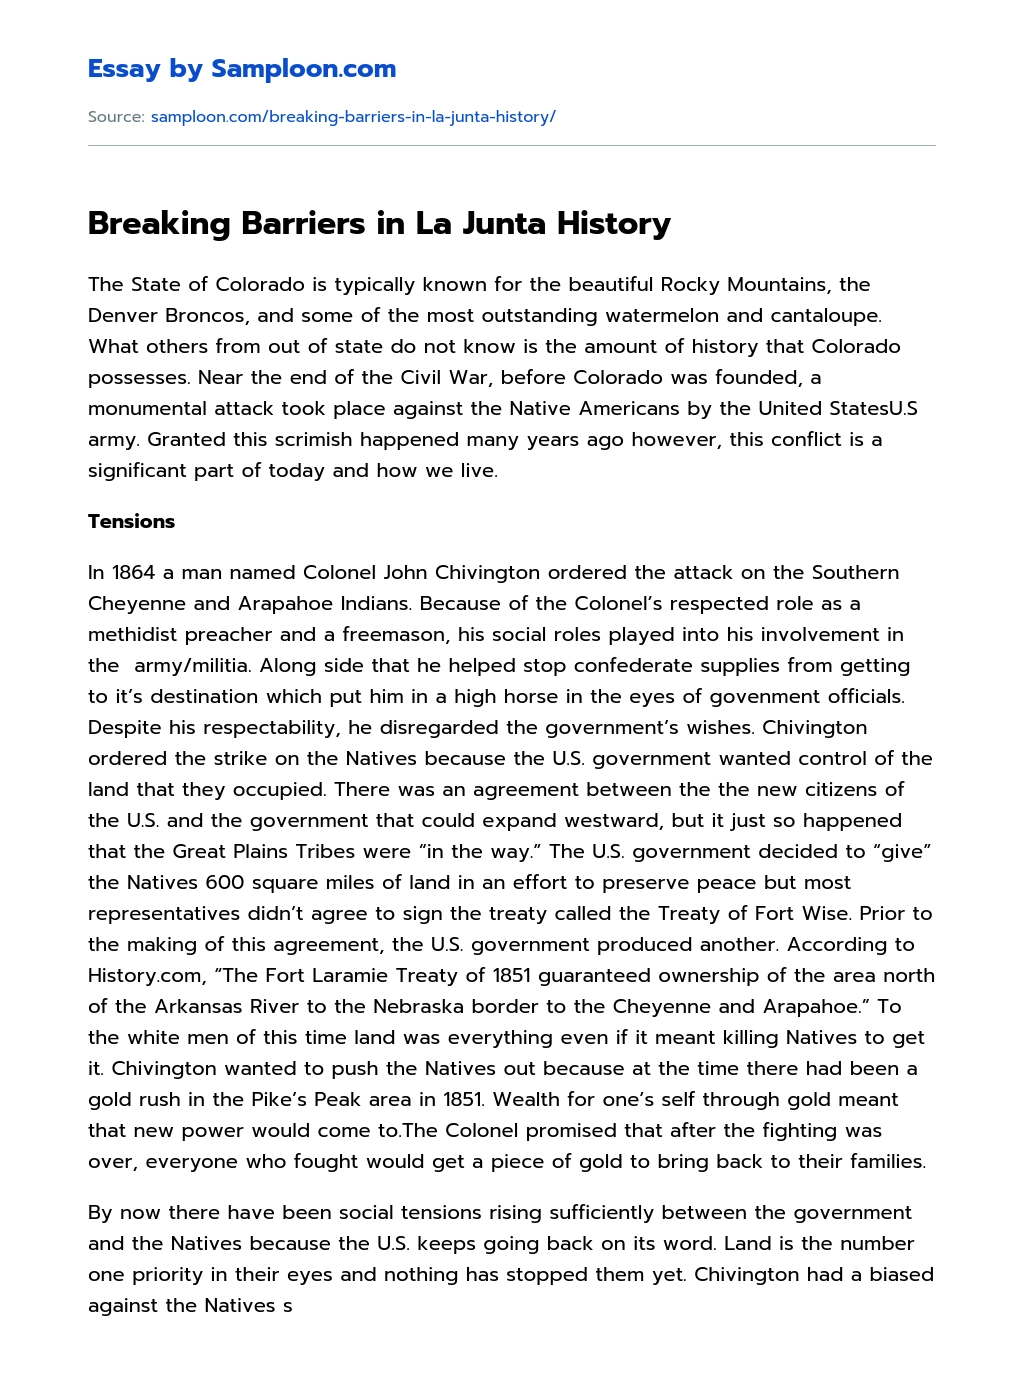 Breaking Barriers in La Junta History essay